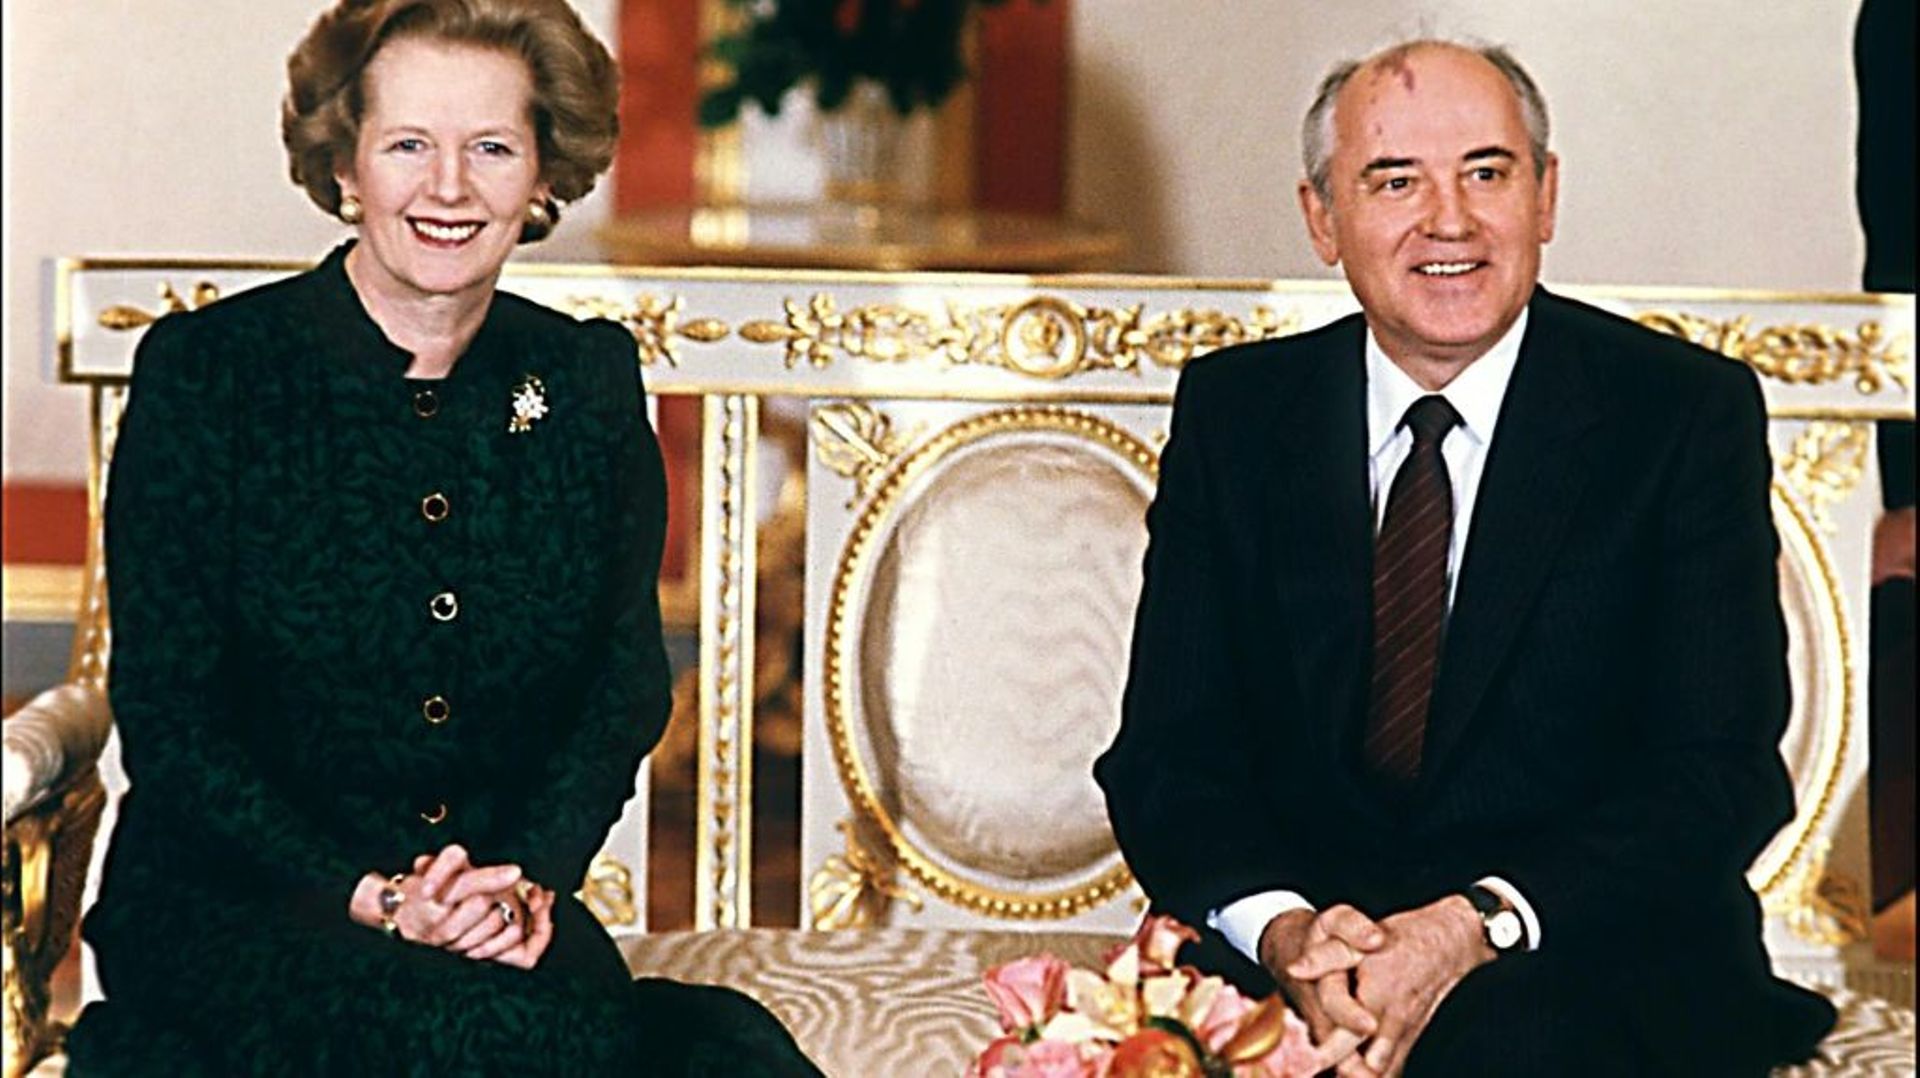 La Première ministre britannique Margaret Thatcher et le leader soviétique Mikhaïl Gorbatchev au Kremlin, le 30 mars 1987 à Moscou